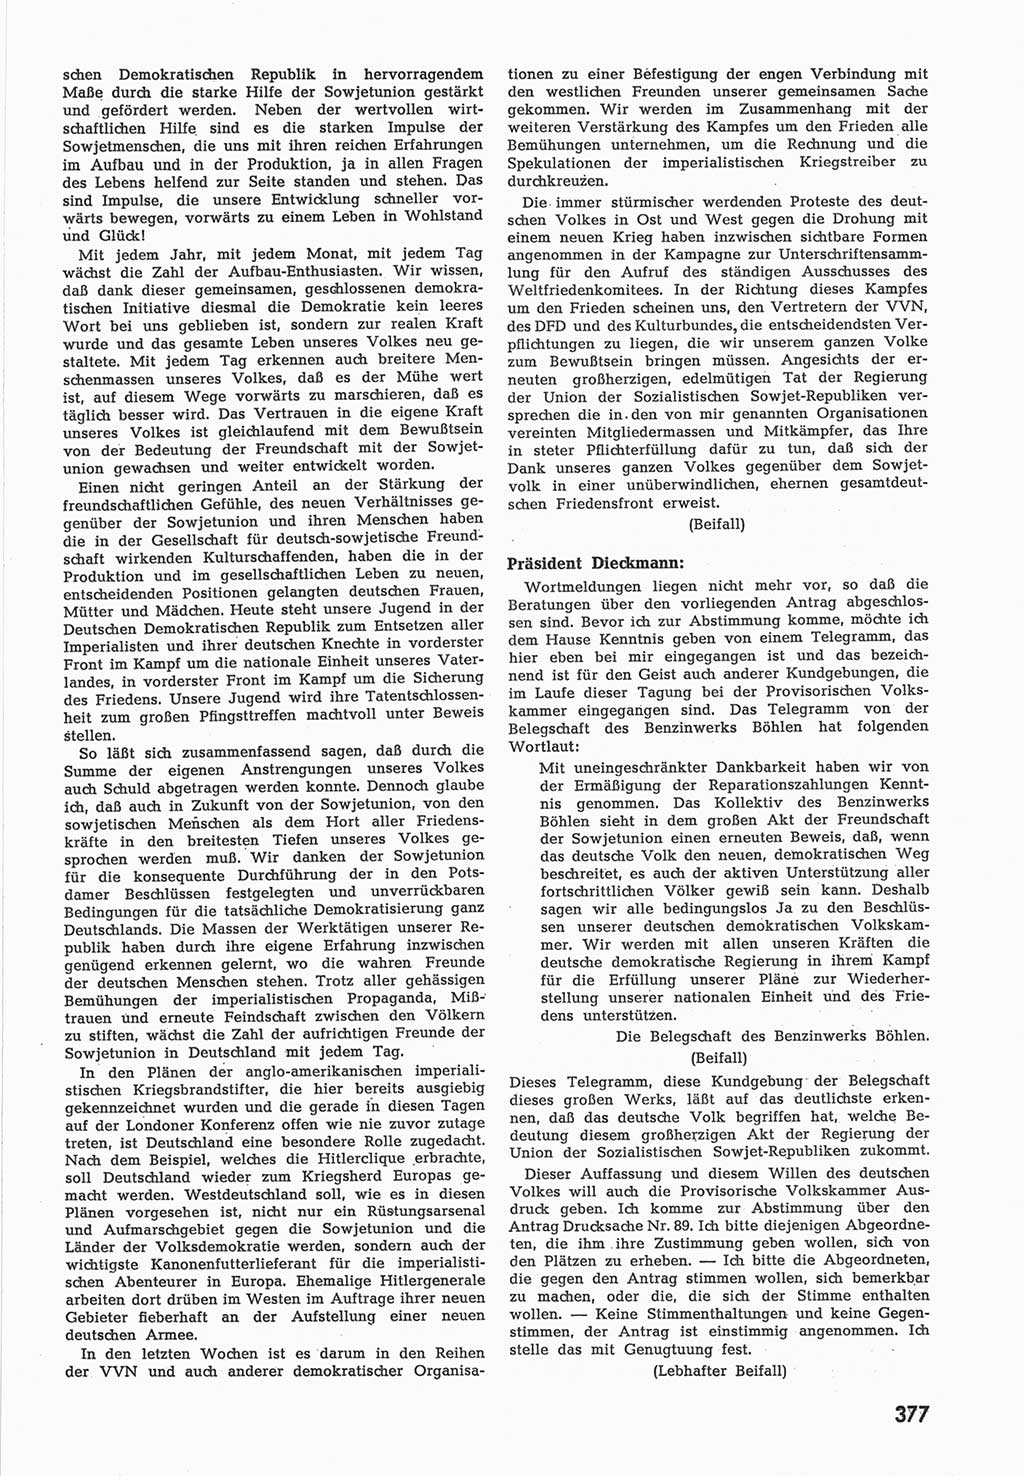 Provisorische Volkskammer (VK) der Deutschen Demokratischen Republik (DDR) 1949-1950, Dokument 395 (Prov. VK DDR 1949-1950, Dok. 395)